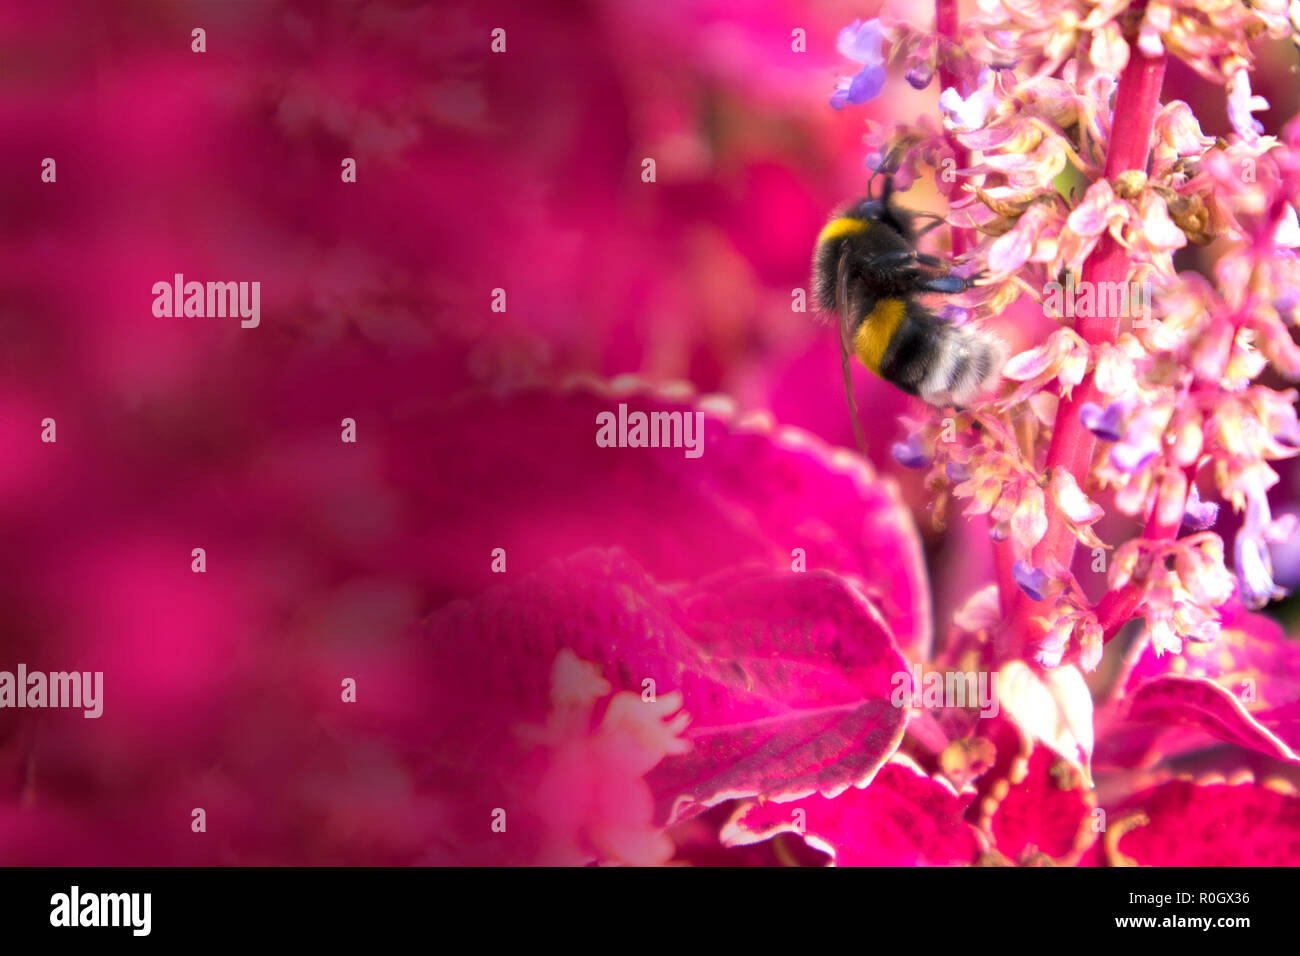 Carino di spessore Bumble Bee raccolgono miele nel folto della red сoleus, può essere utilizzato come mock up con spazio per il testo Foto Stock